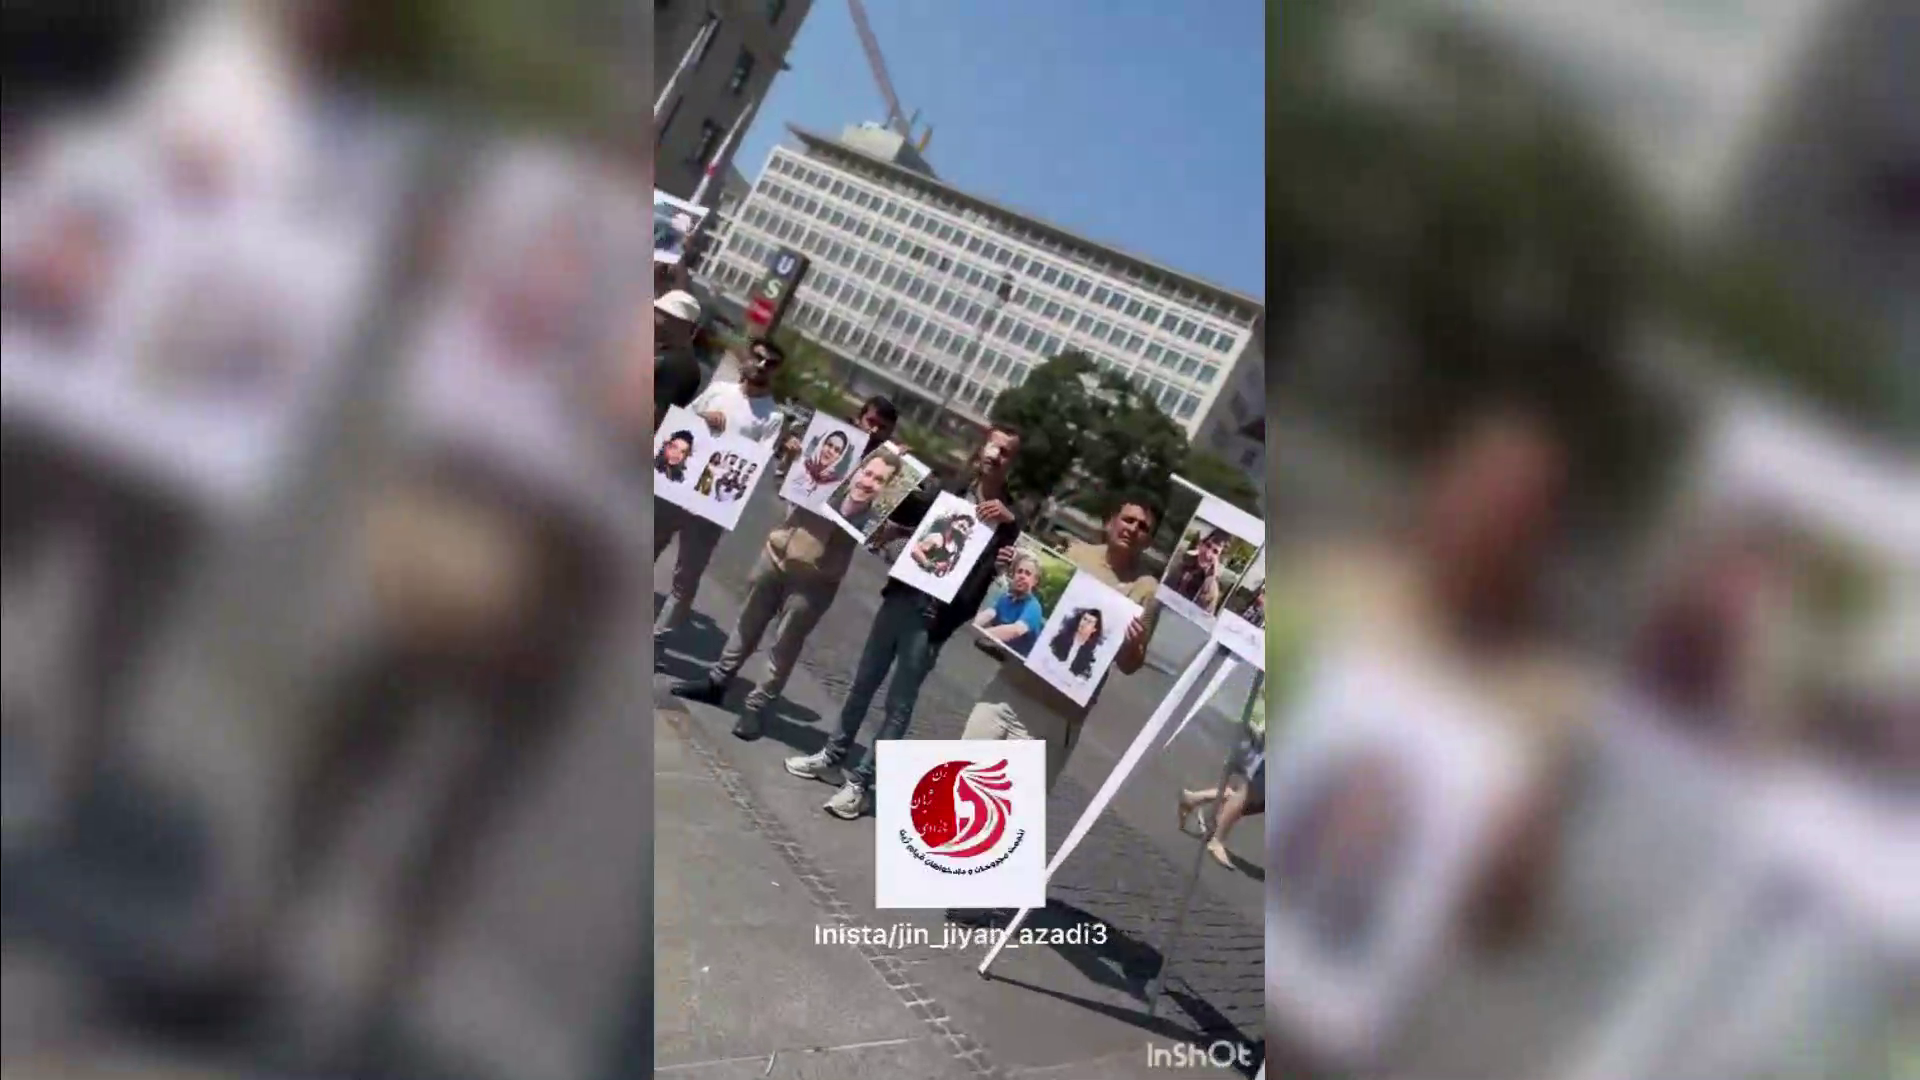 اعتراضی با فراخوان مجروحان و دادخواهان قیام ژینا در مونیخ آلمان ویدیو